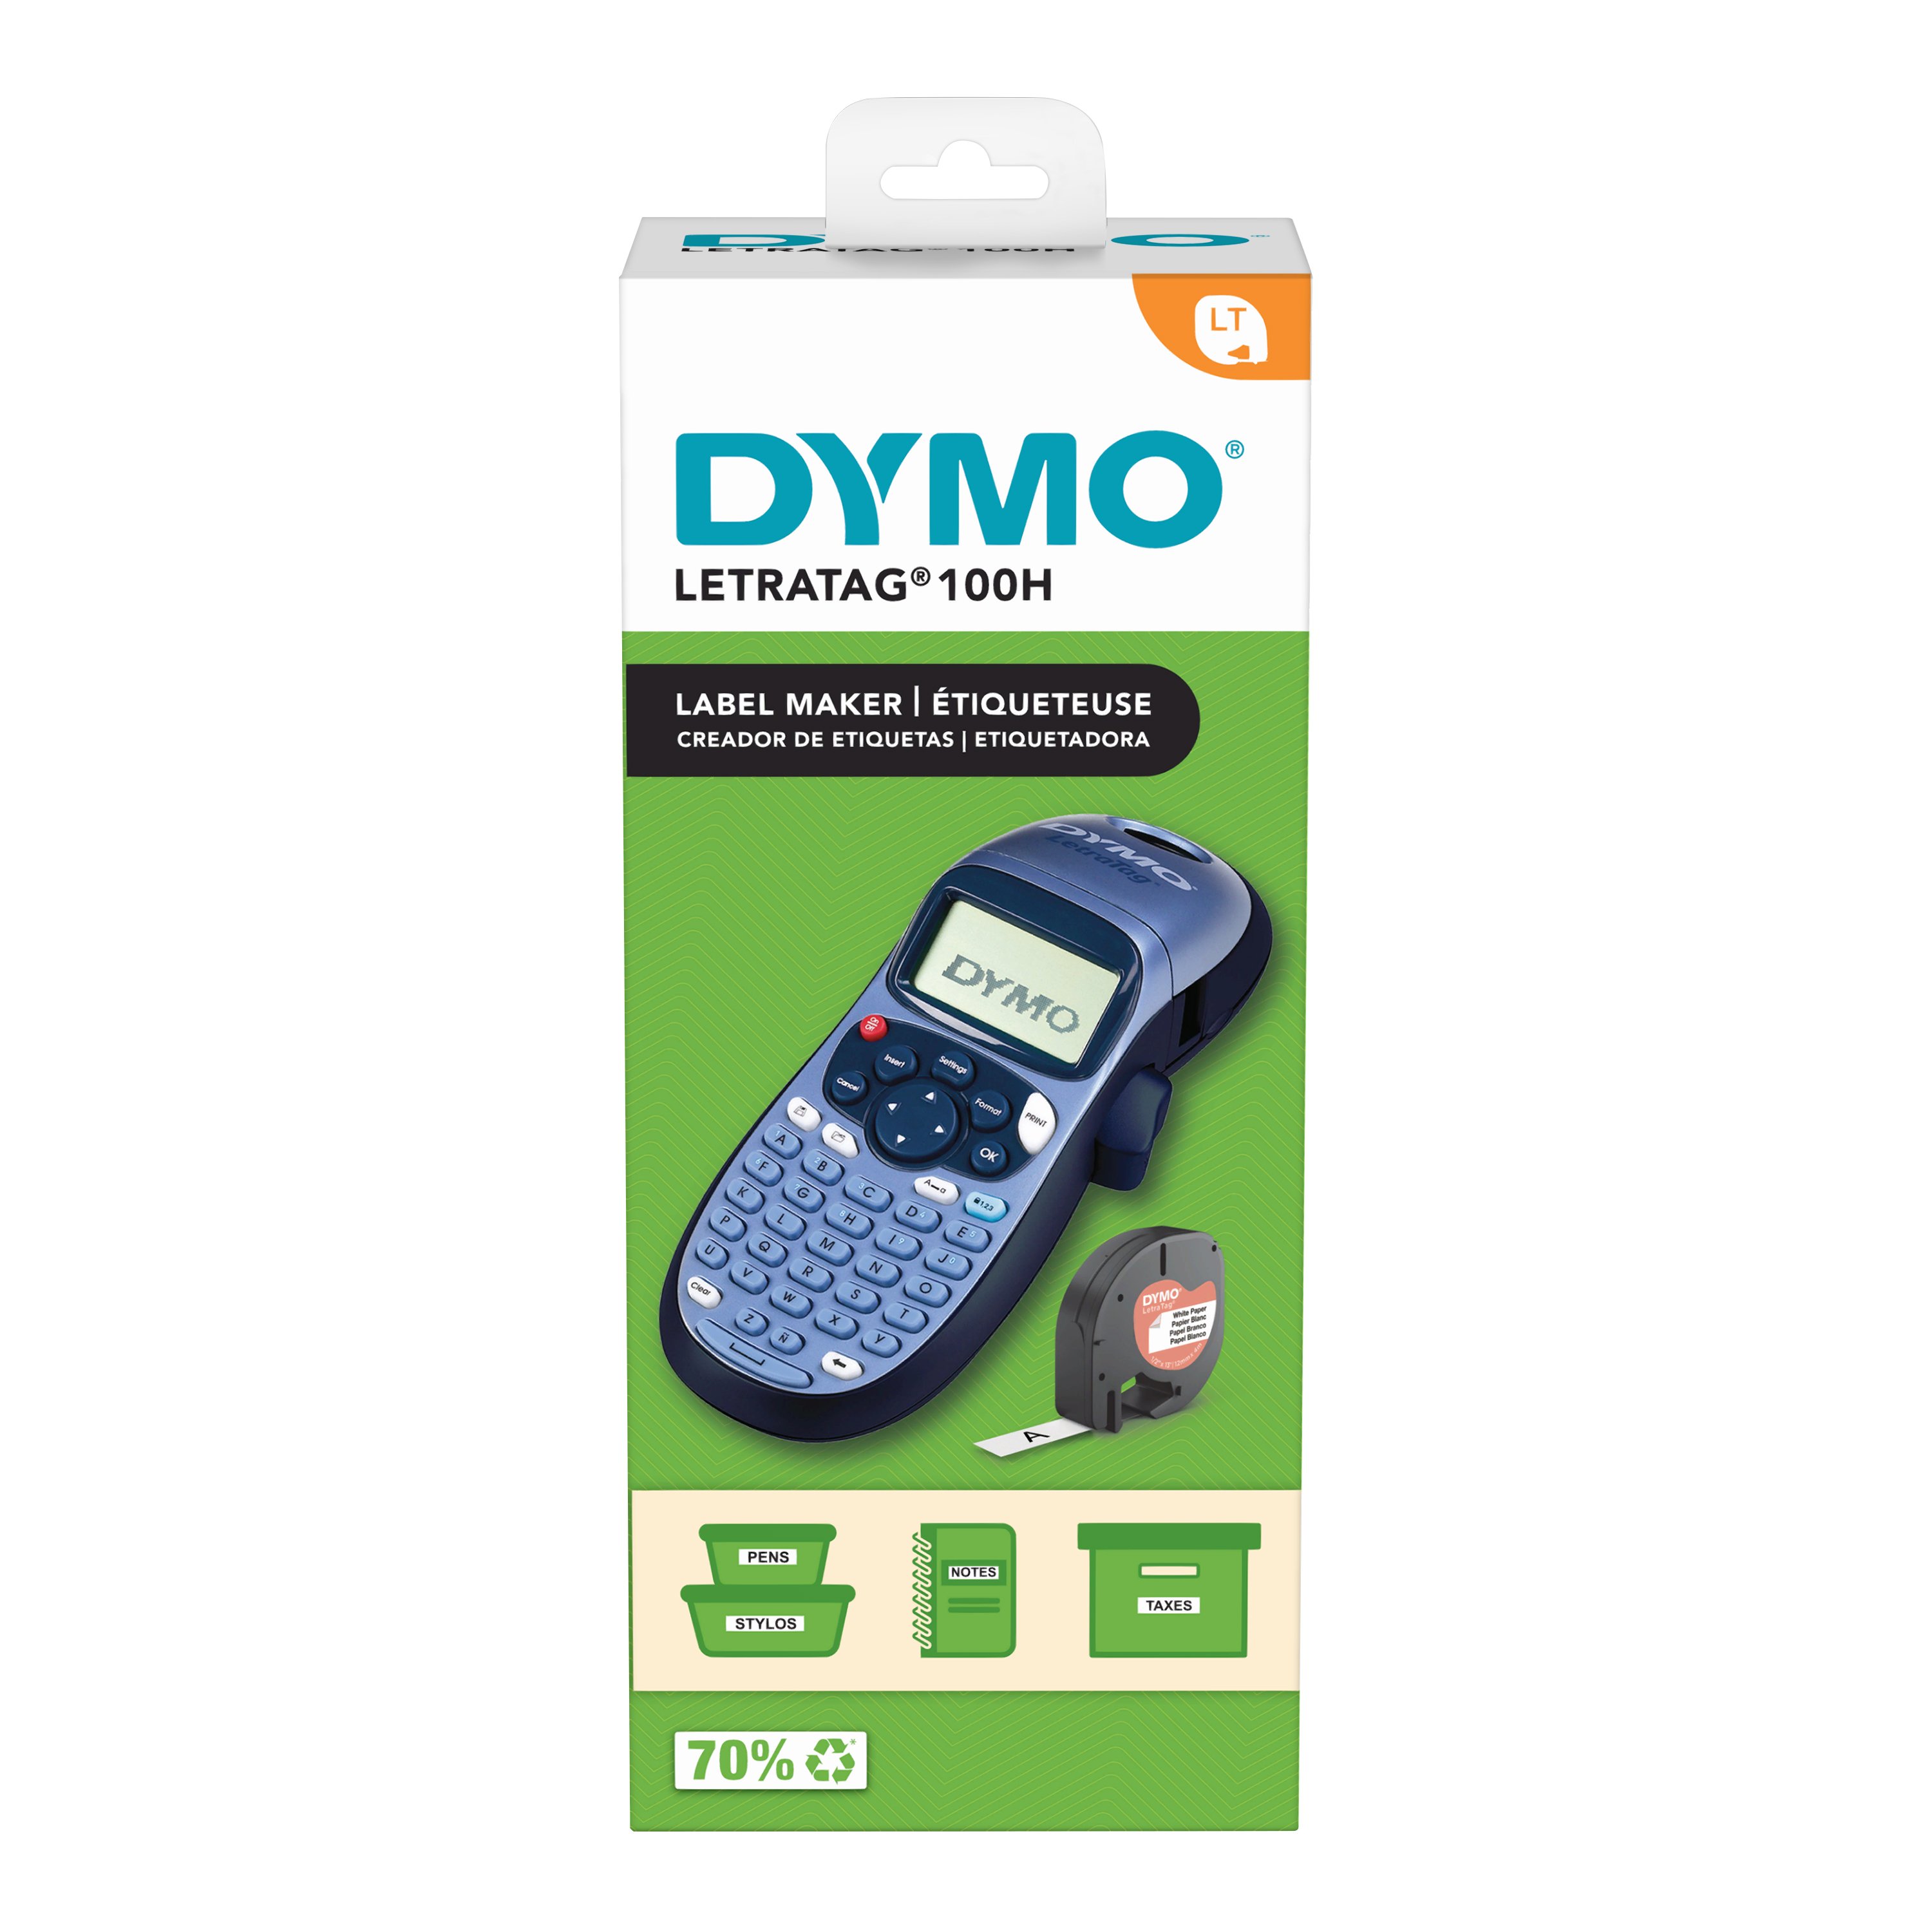 DYMO - LetraTag 100H ABC Label Maker